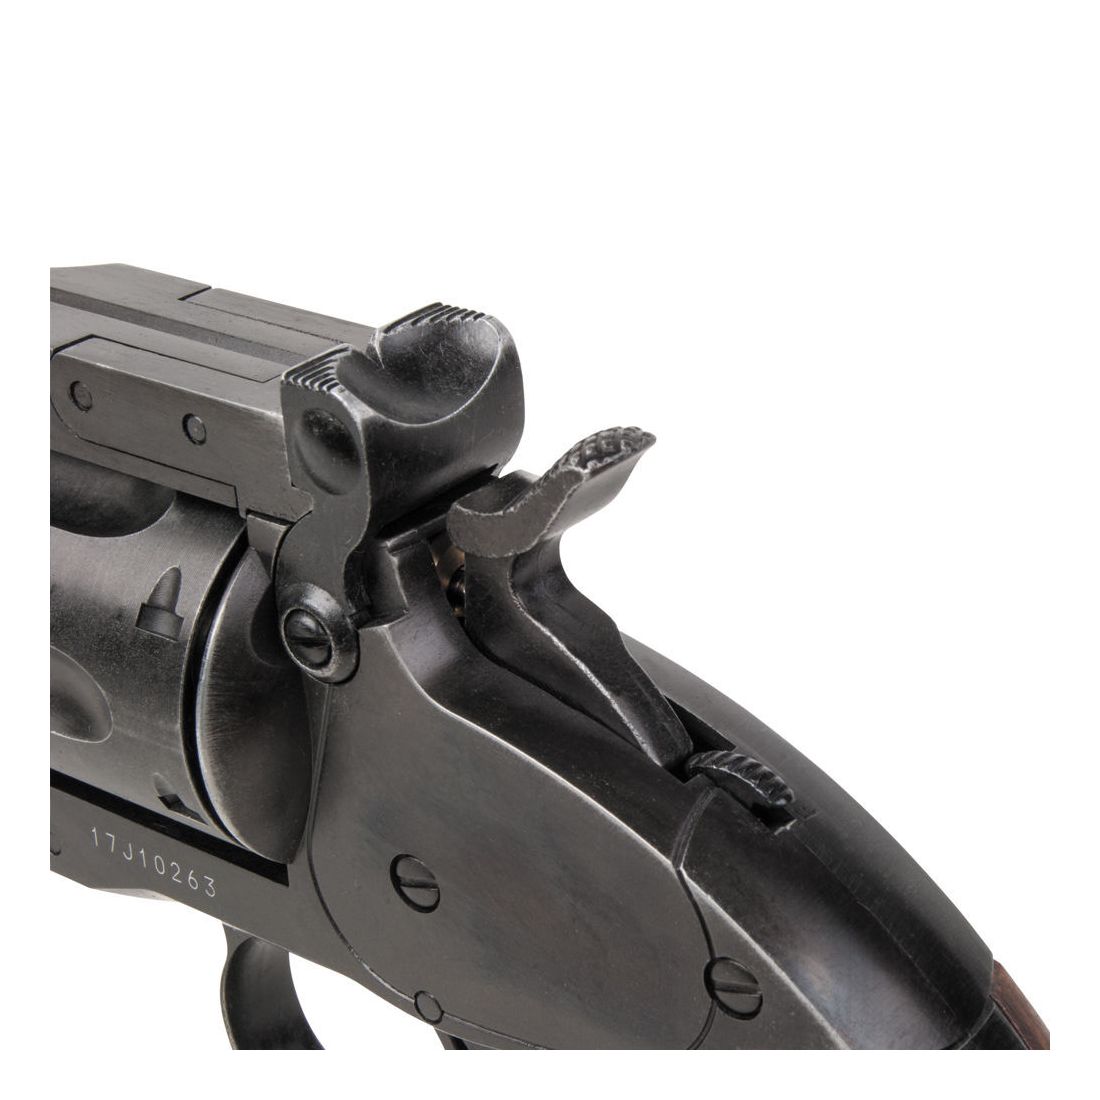 Schofield 6 Zoll CO2 Revolver Kaliber 4,5 mm Diabolos & BBs - Kugelfang-Set